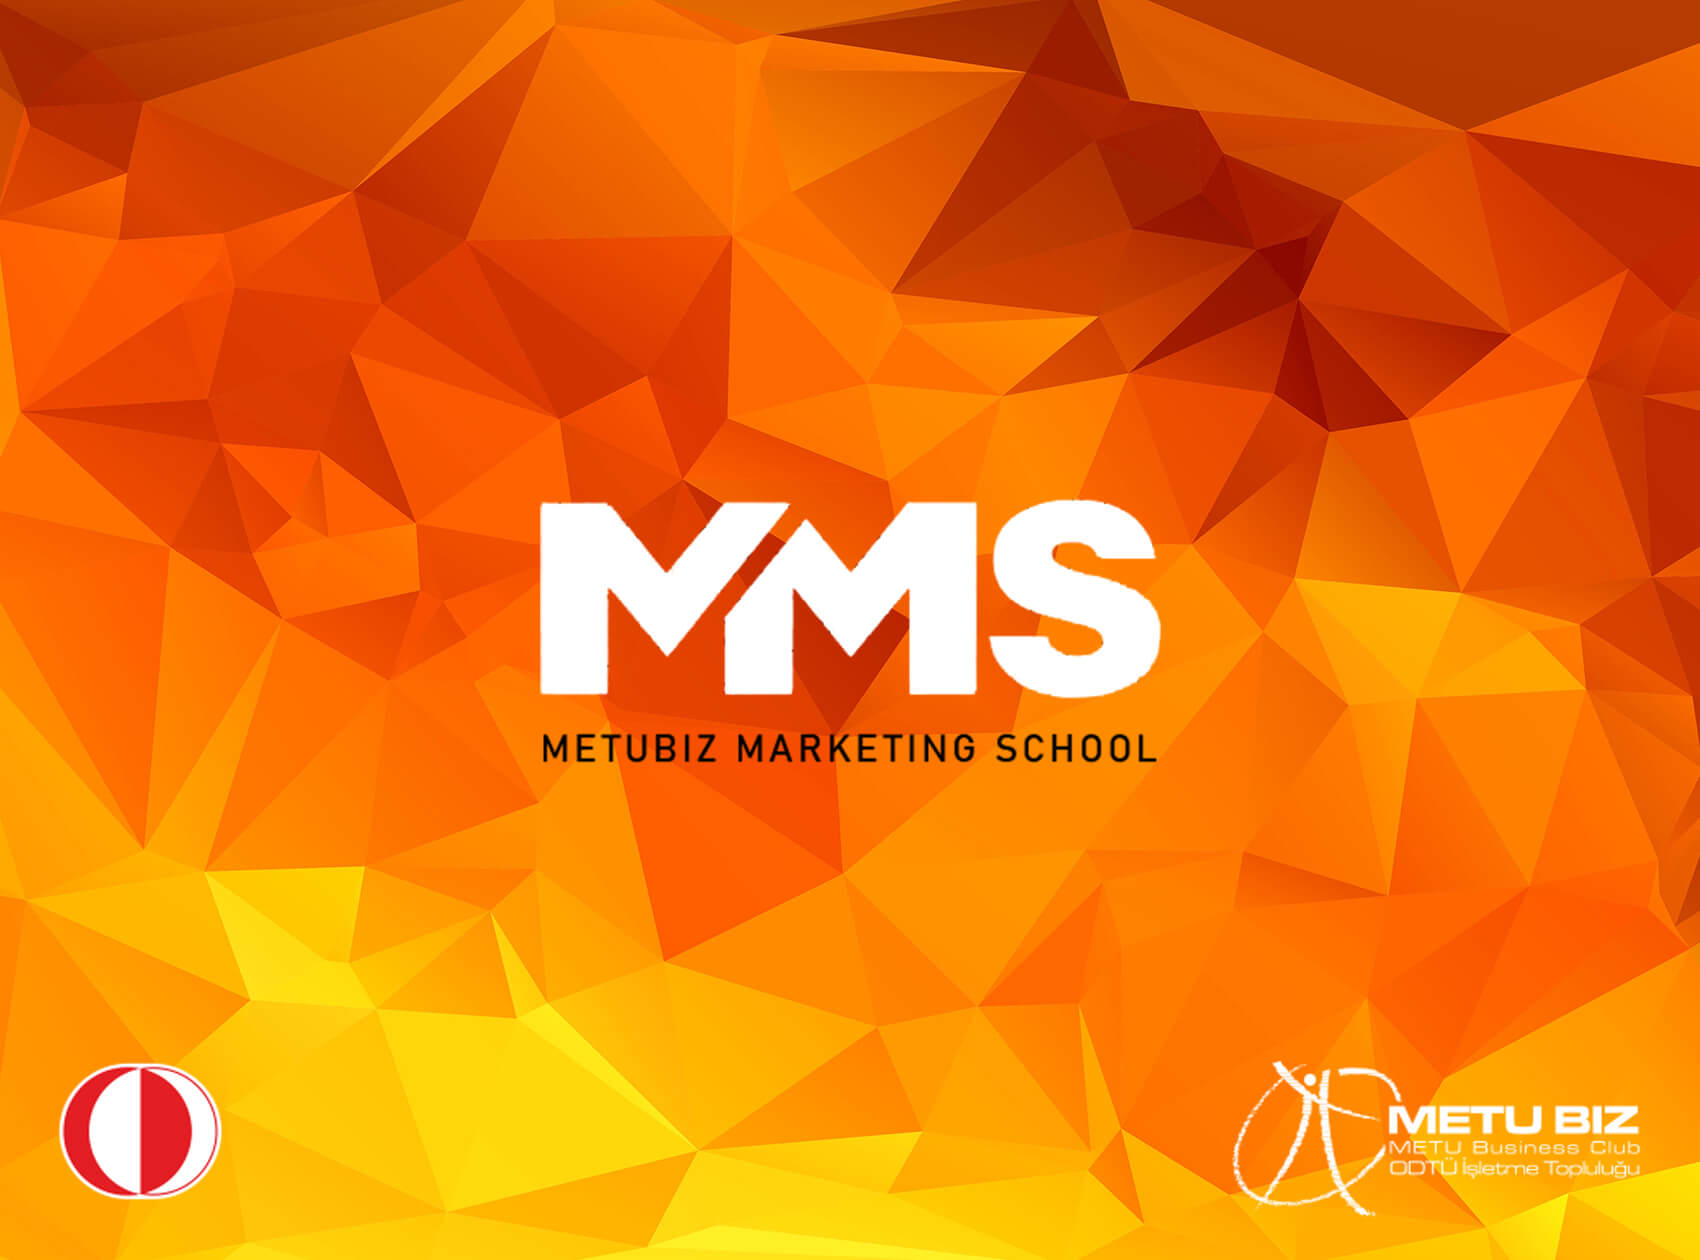 METUBIZ Marketing School